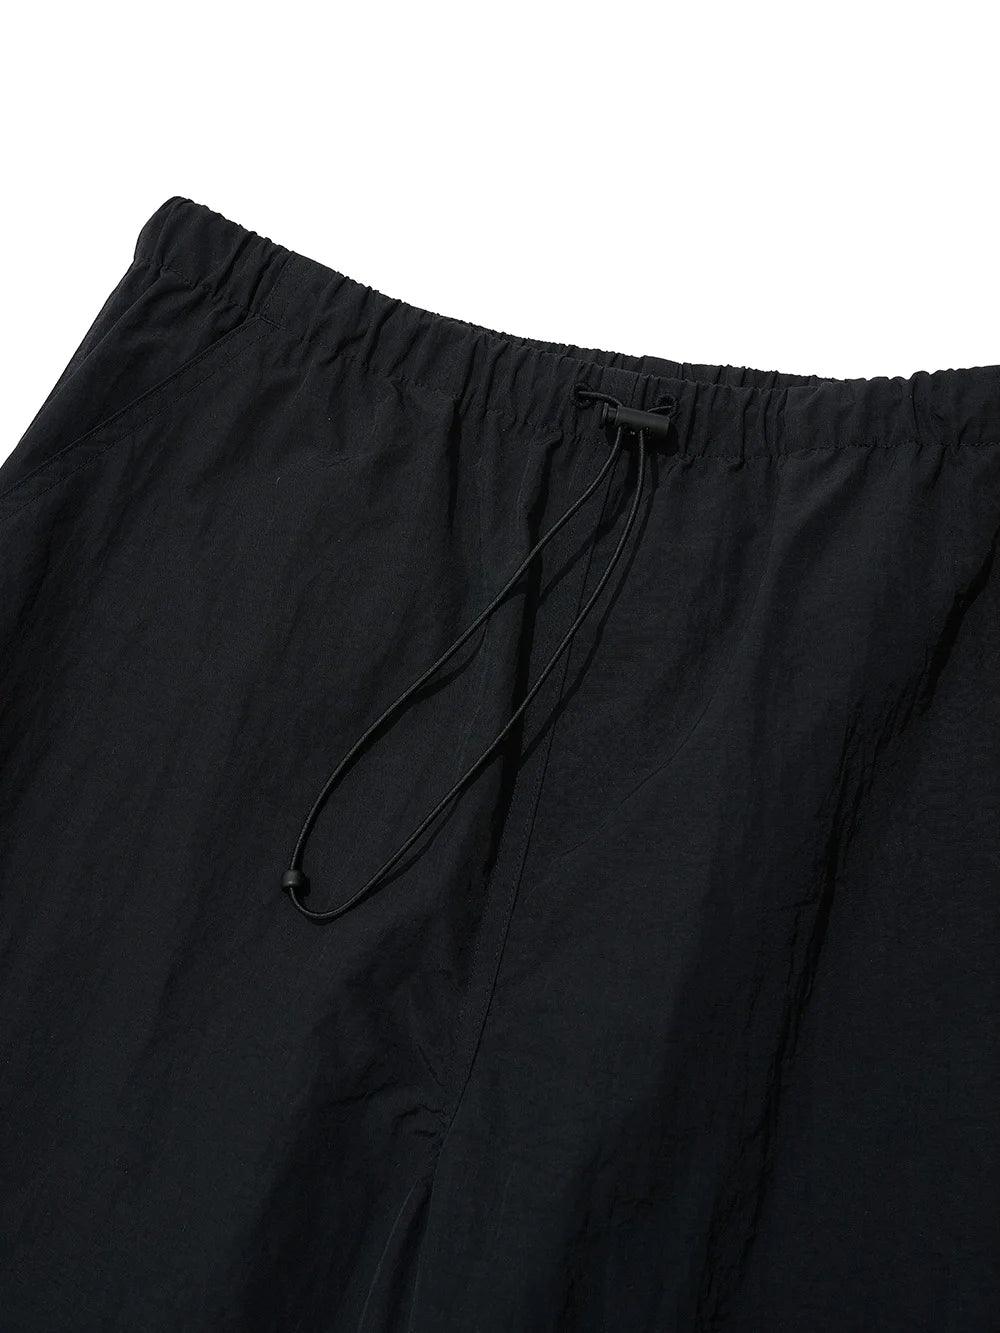 Partimento String Parachute Pants - Black - bottoms